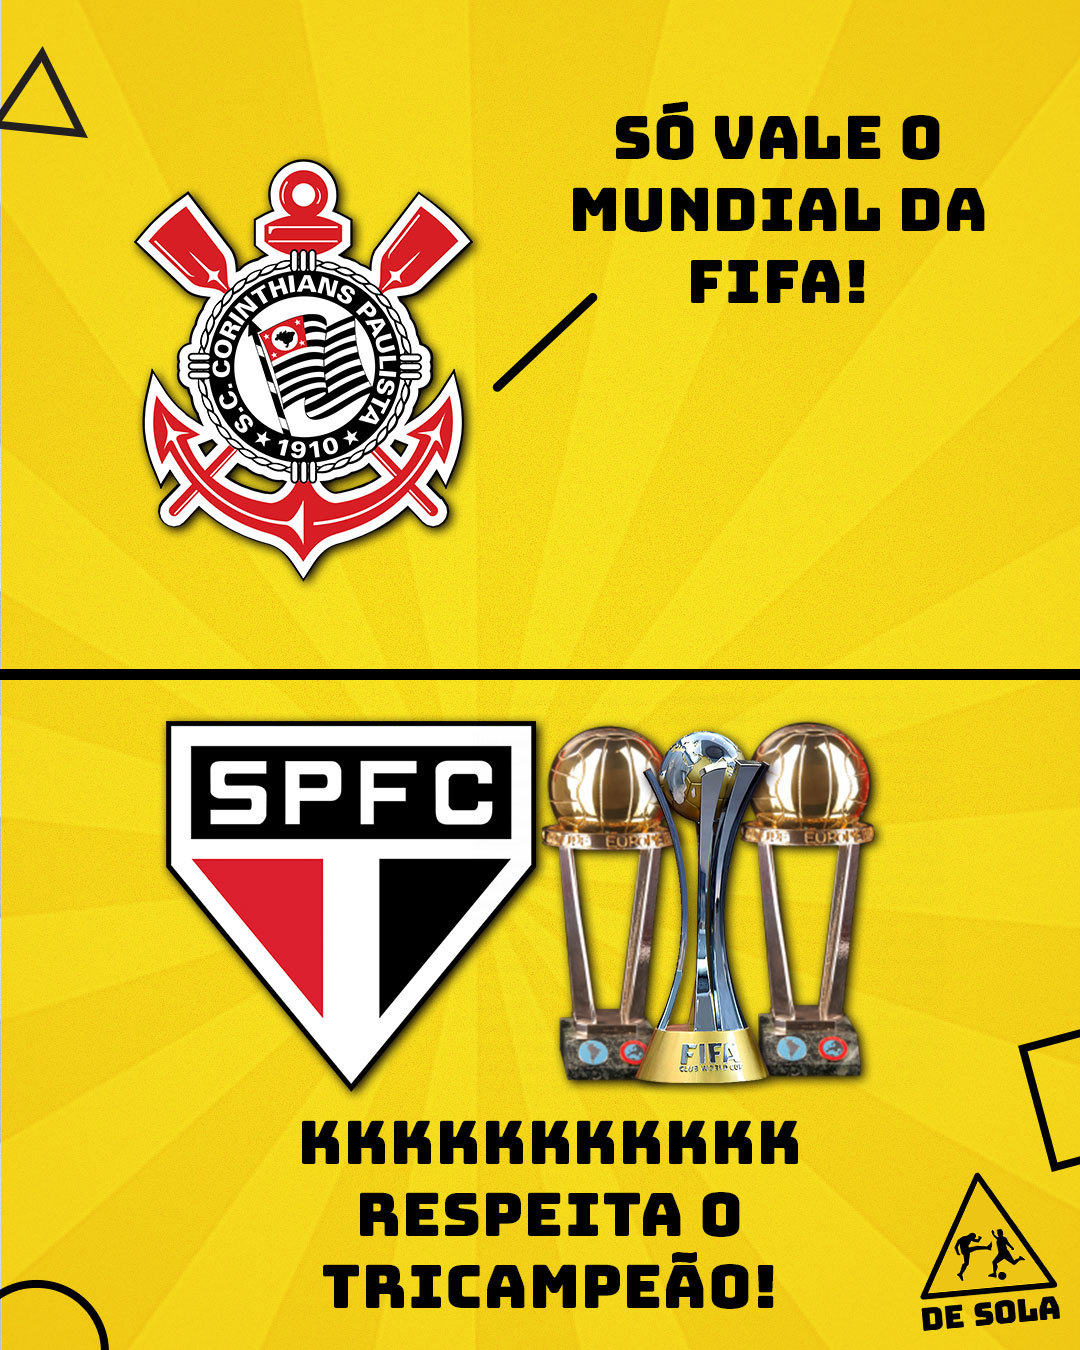 São Paulo penta campeão mundial 😎 : r/futebol